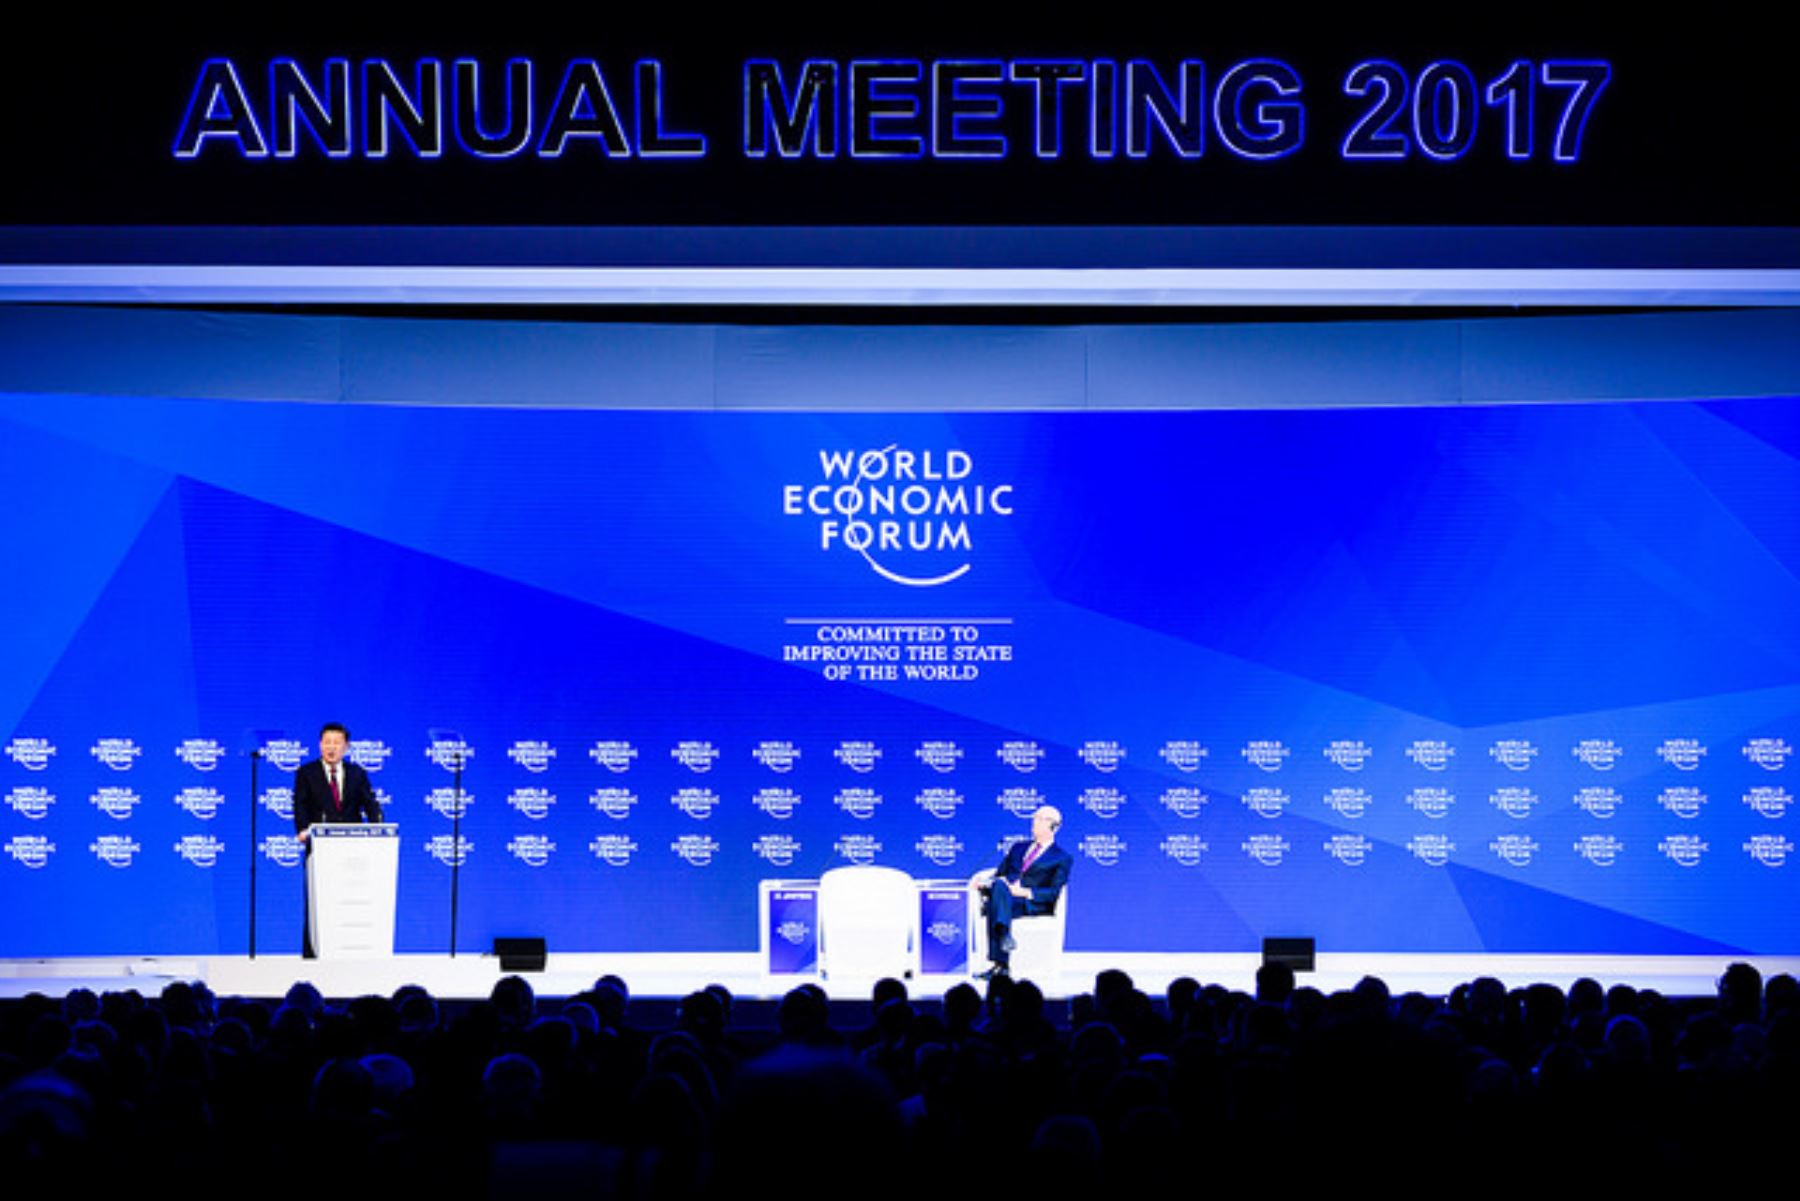 Presidente de China Xi Jinping inicia la plenaria del Foro Económico Mundial en Davos. Foto: WEF.